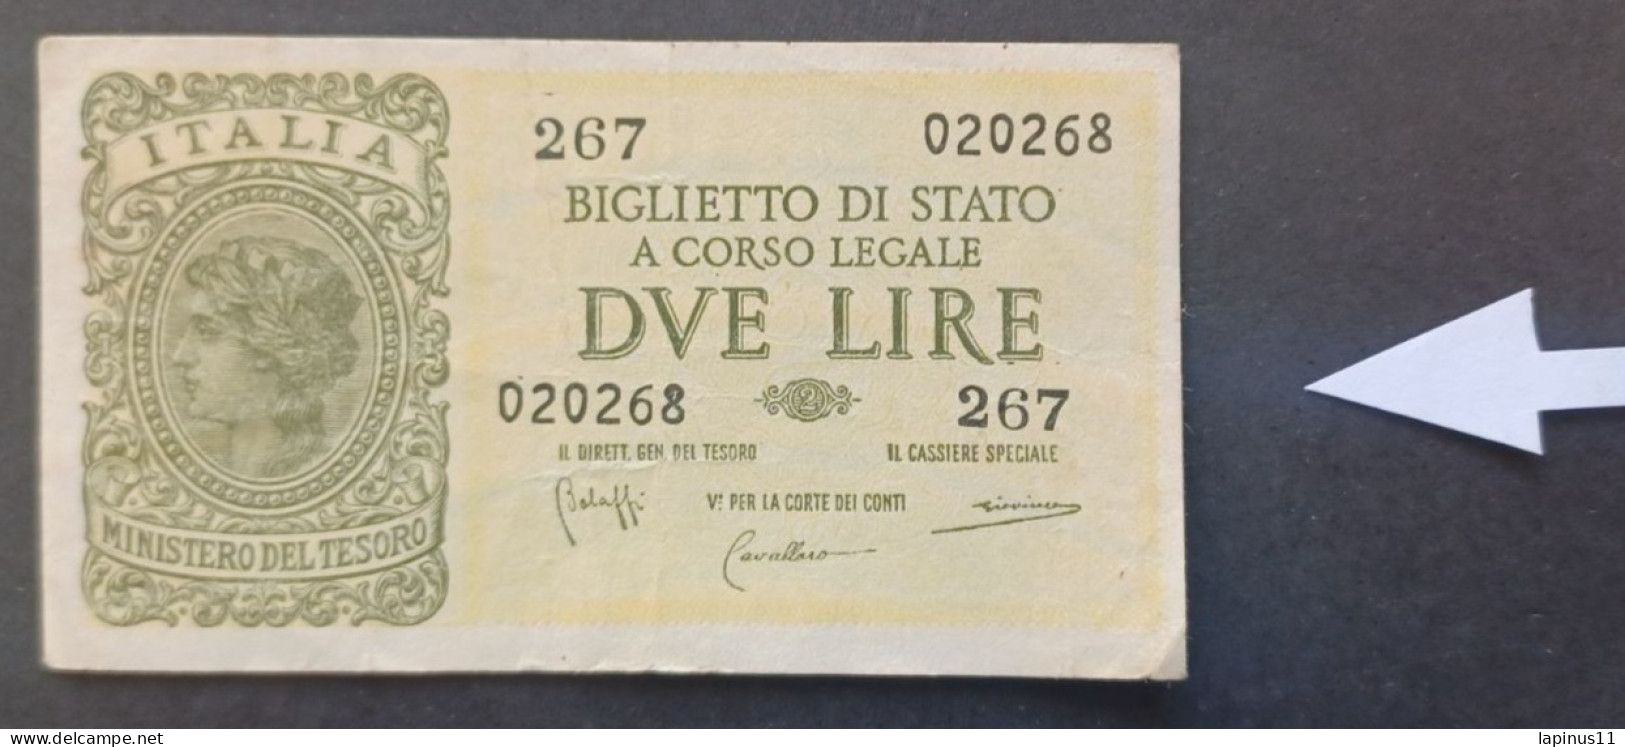 BANKNOTE ITALY KINGDOM VITTORIO EMANUELE 2 LIRE 1944 BOLAFFI GIOVINCO ERRORE EVANESCIENTE PRINT NOT CIRCULATED - Italië – 2 Lire